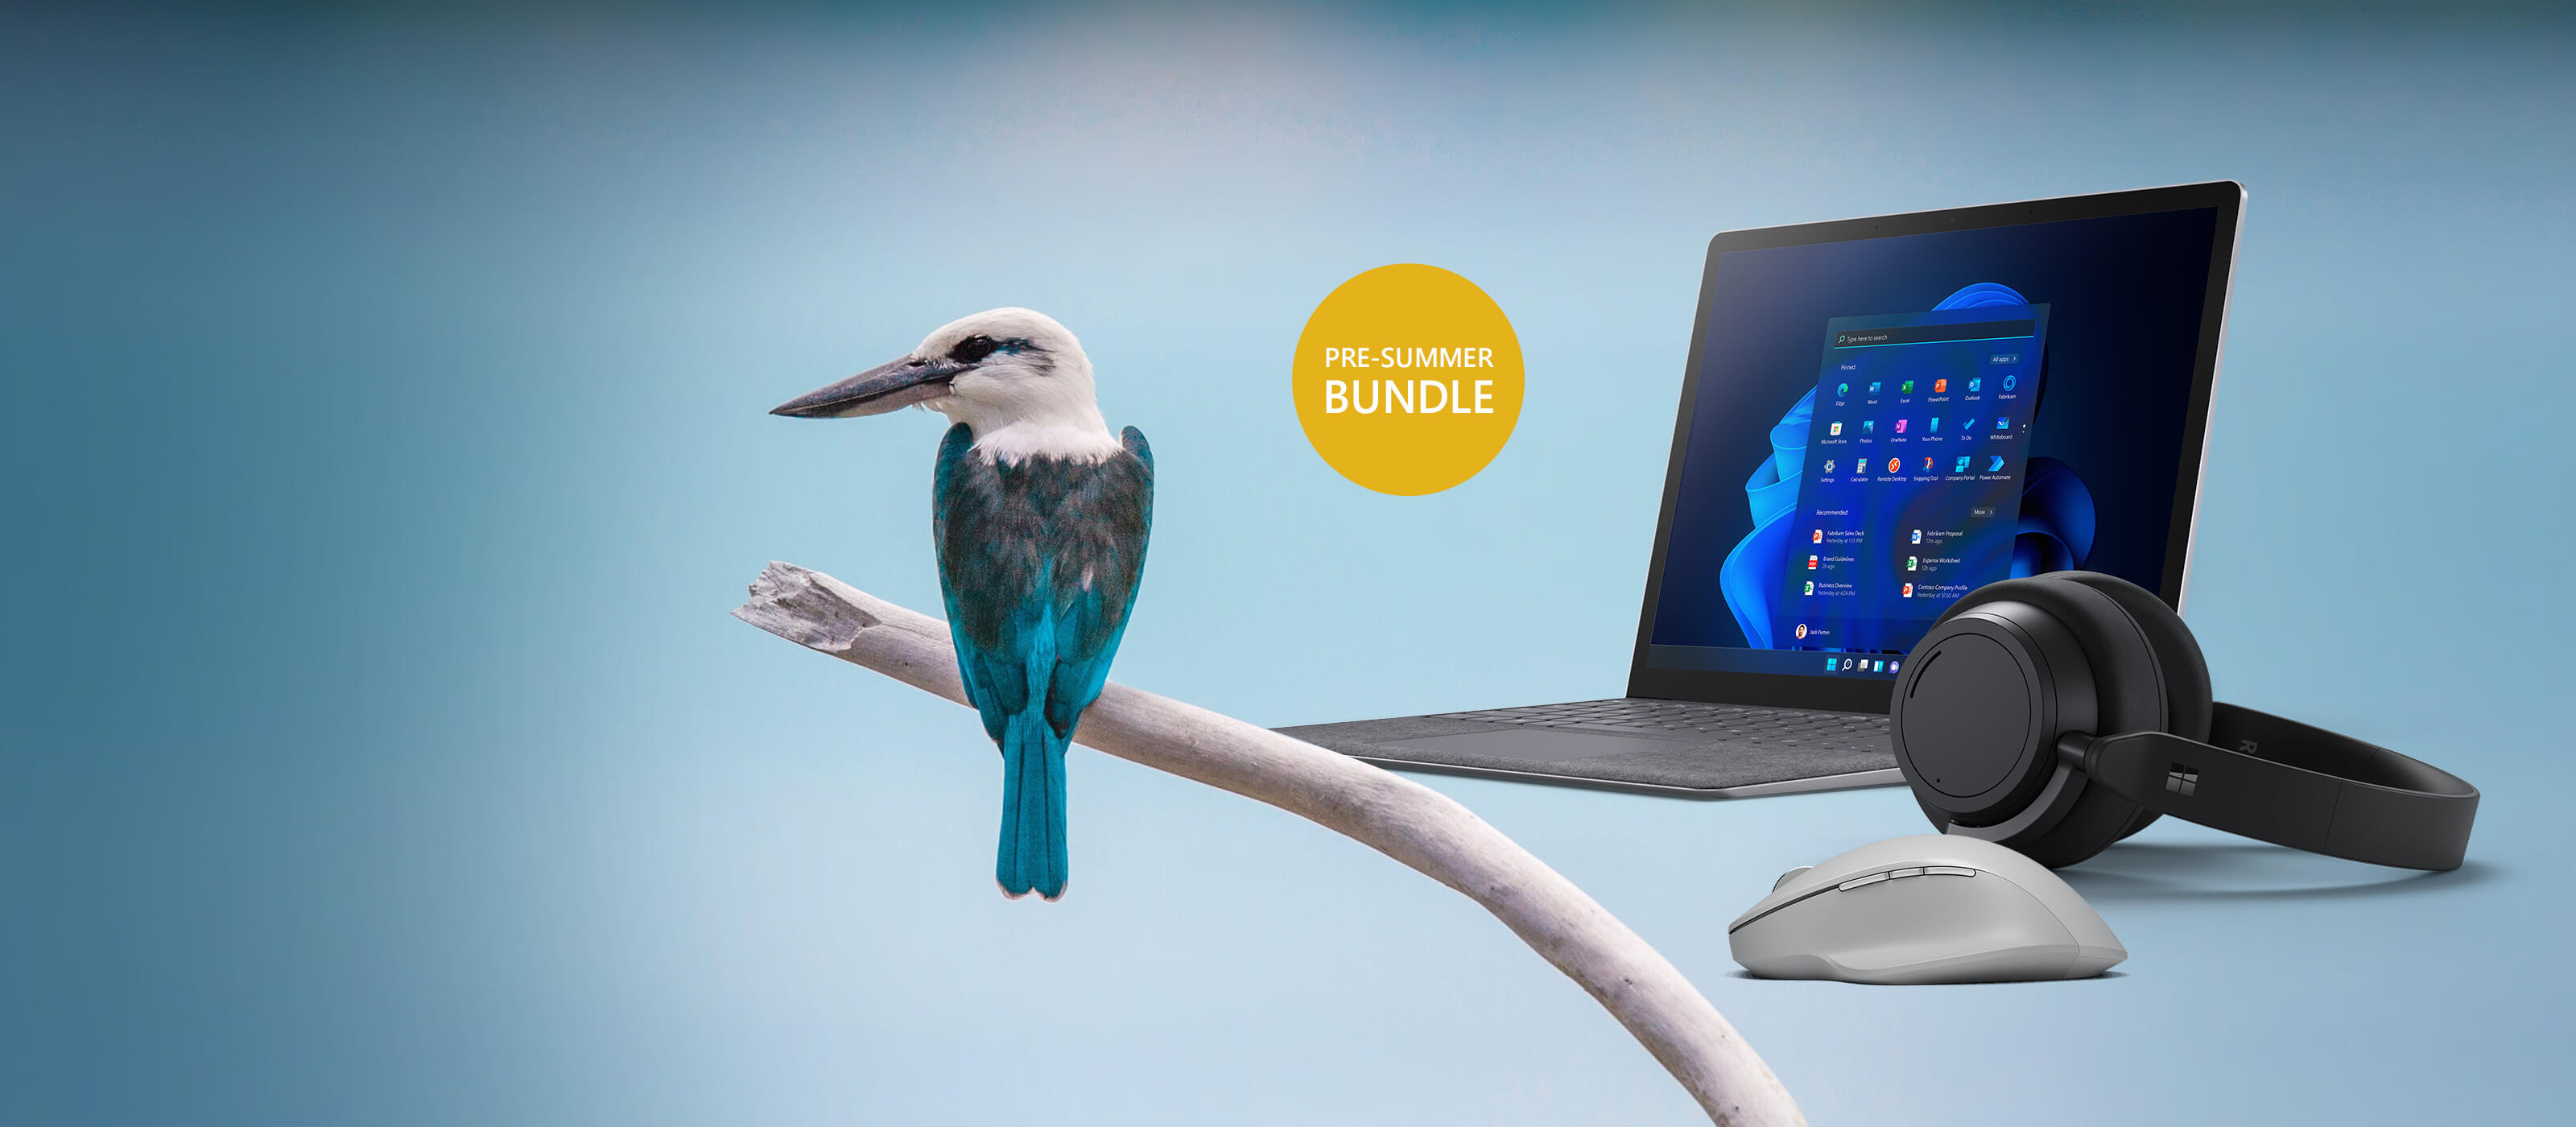 Le Surface Laptop 4 est placé à côté d'un oiseau sur un fond bleu